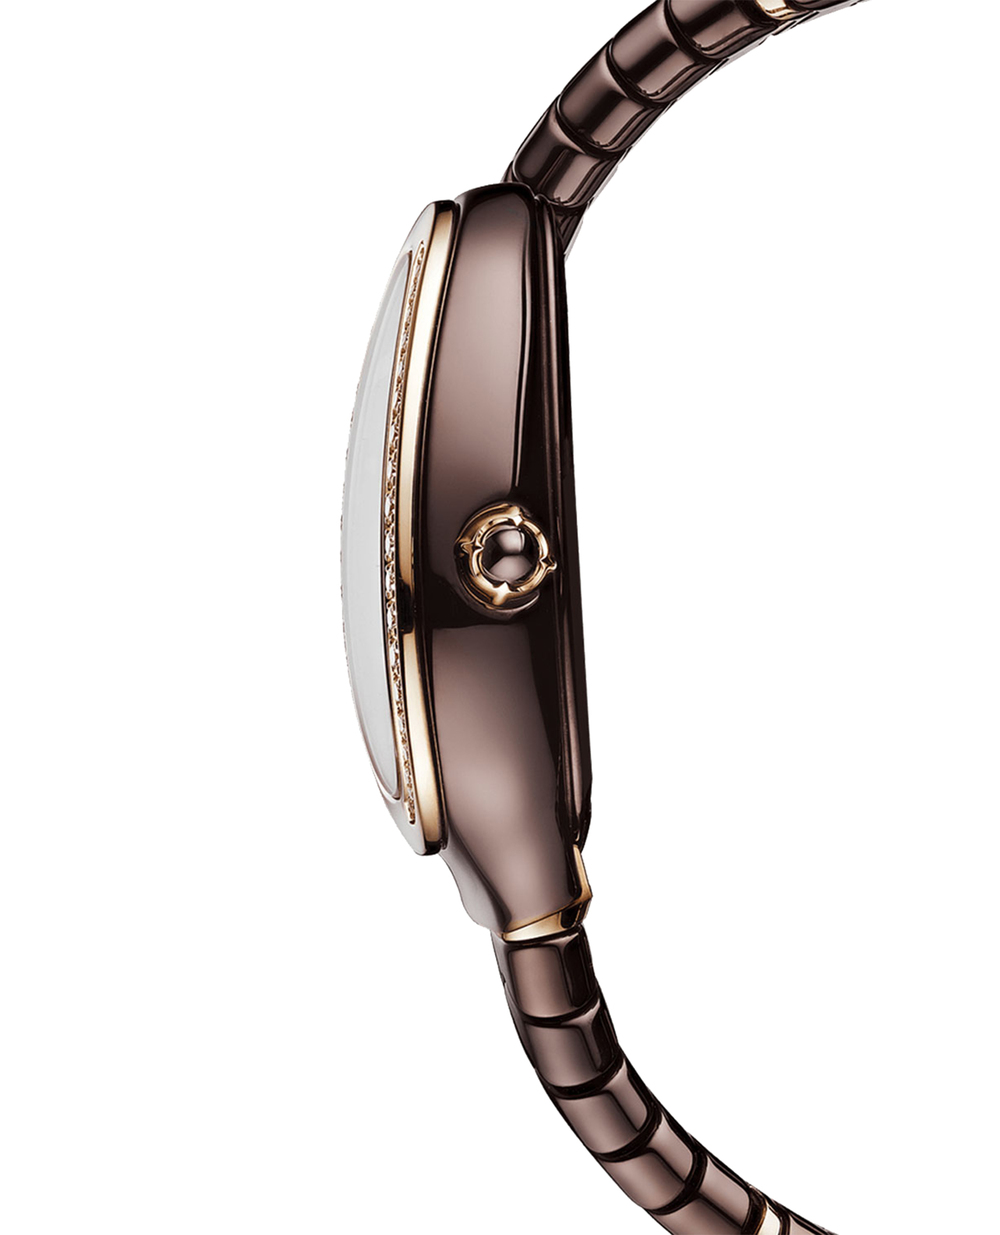 Часы Serpenti Spiga Bulgari 103060, коричневый цвет • Купить в интернет-магазине Kameron